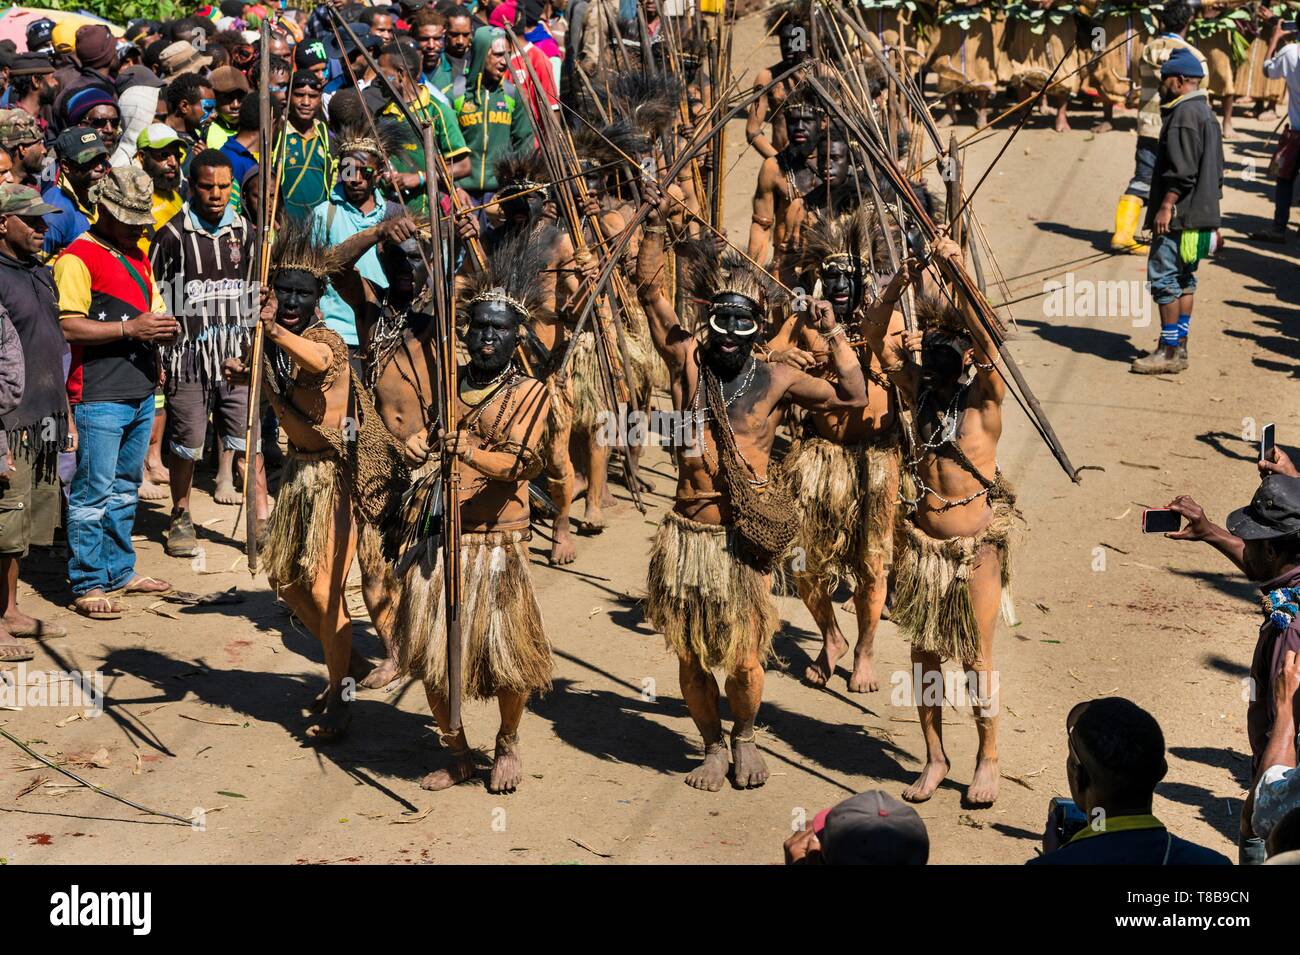 Papua-neuguinea, Enga Provinz, Enga Stamm, Enga zeigen, Wabag region, Tänzer gekleidet für eine Sing-sing (traditionelle Tanz) zu Fuß von Wabag Show Arena Stockfoto